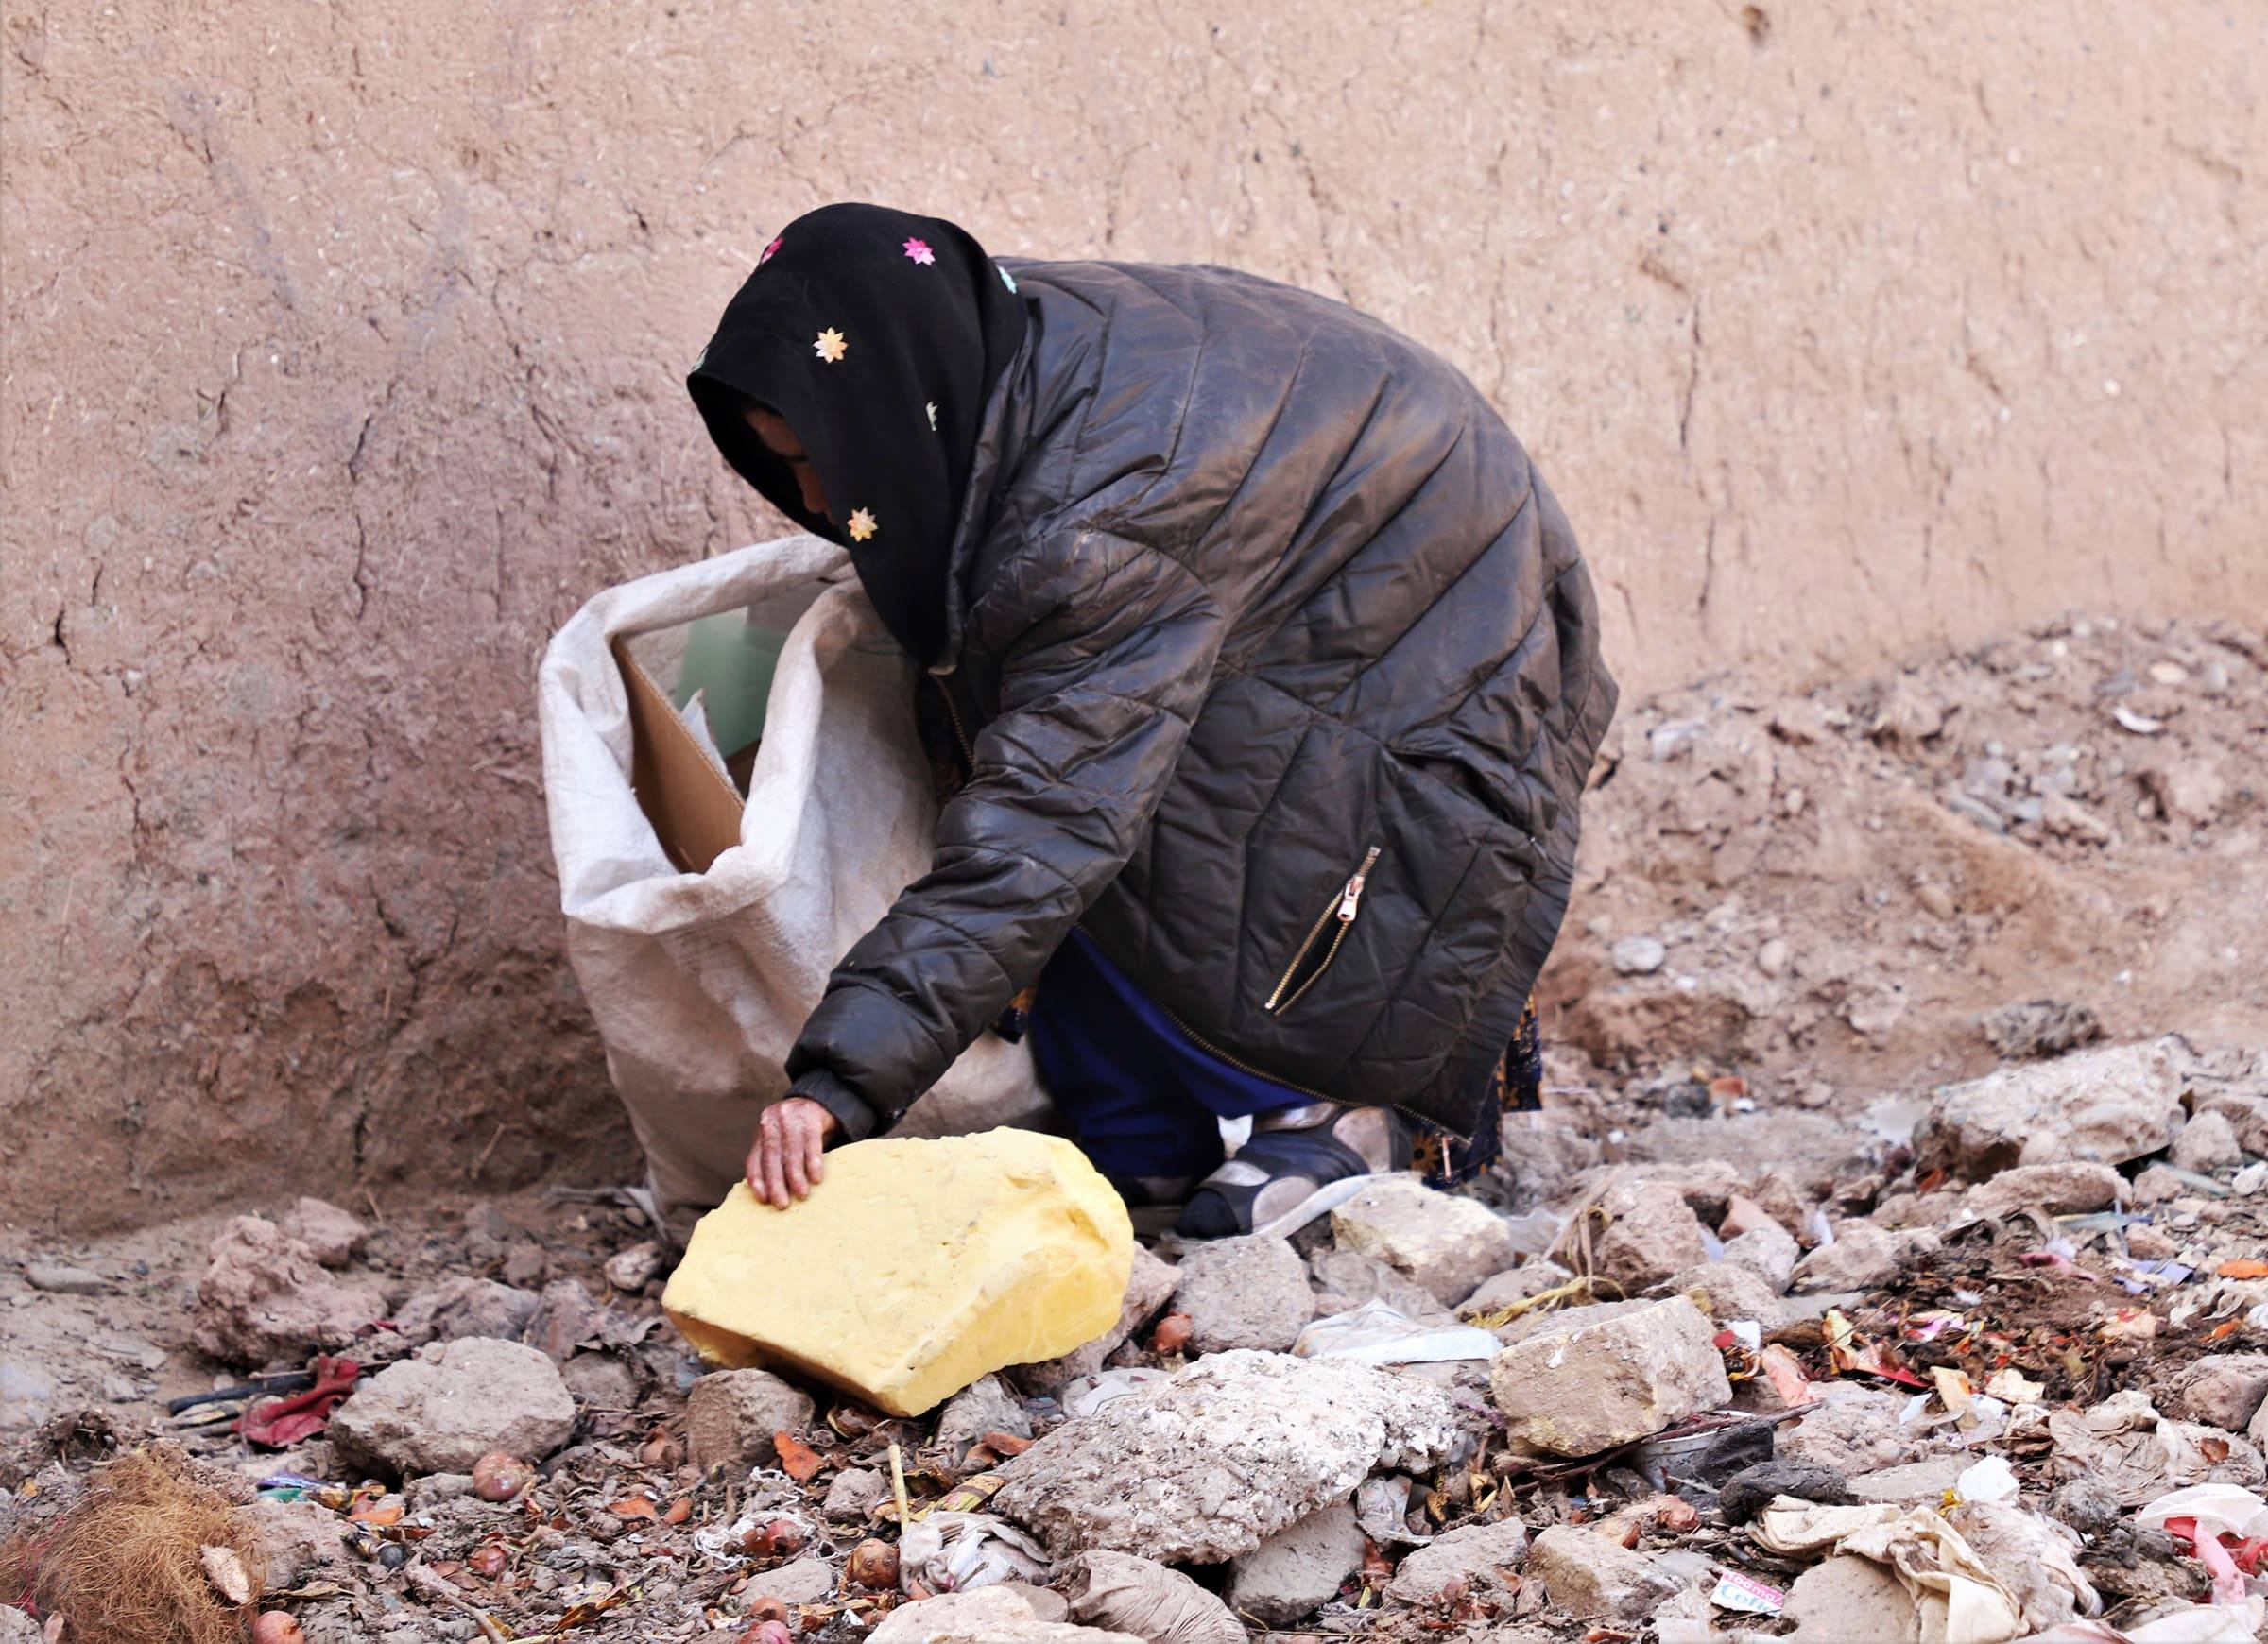 羅琪雅每天清晨起床，到處搜尋垃圾桶，撿拾人們丟棄的東西賺錢。(台灣世界展望會提供)